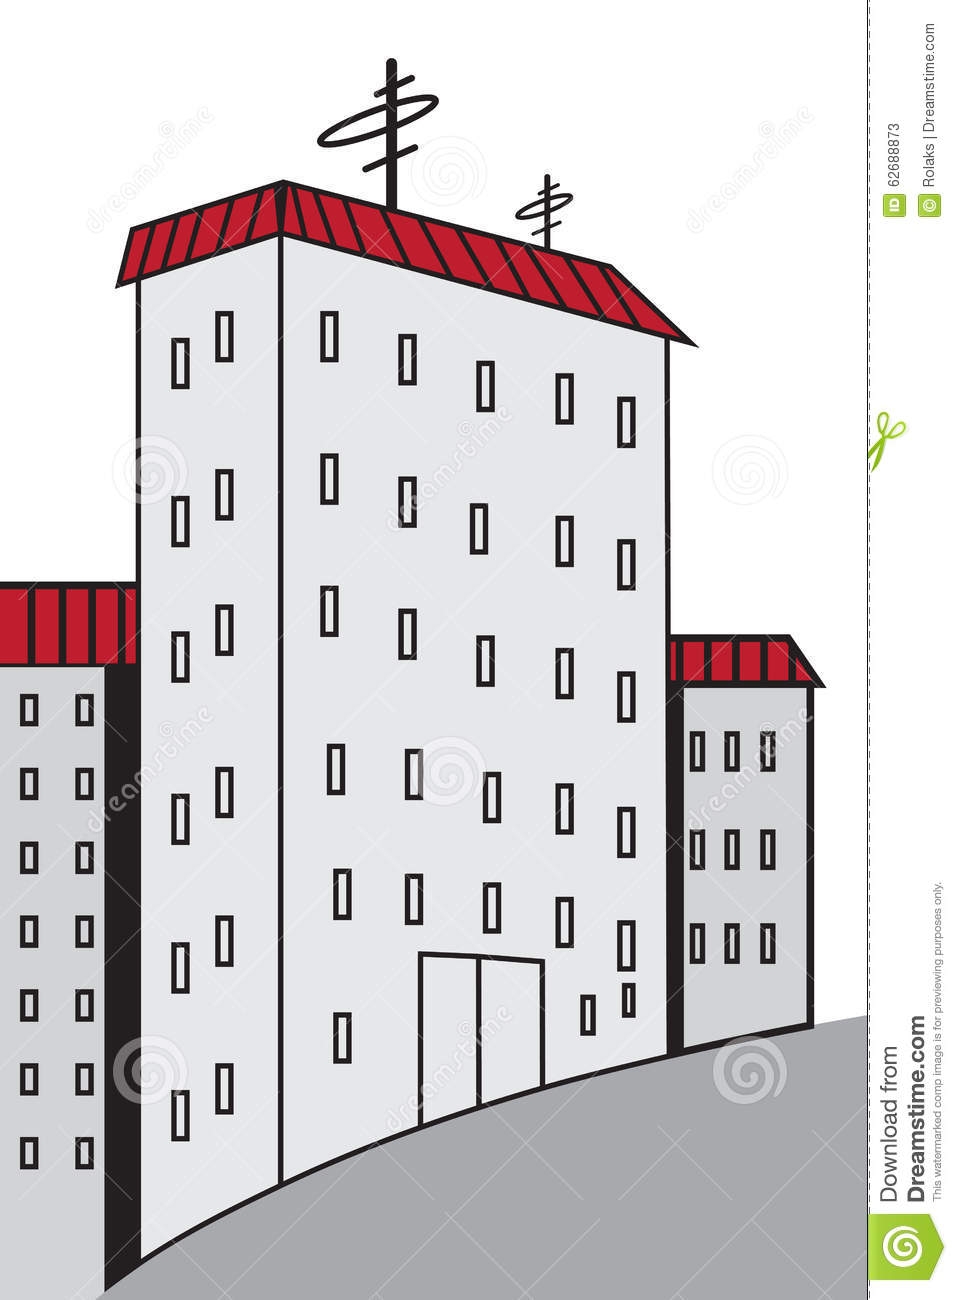 Нарисовать многоэтажный дом